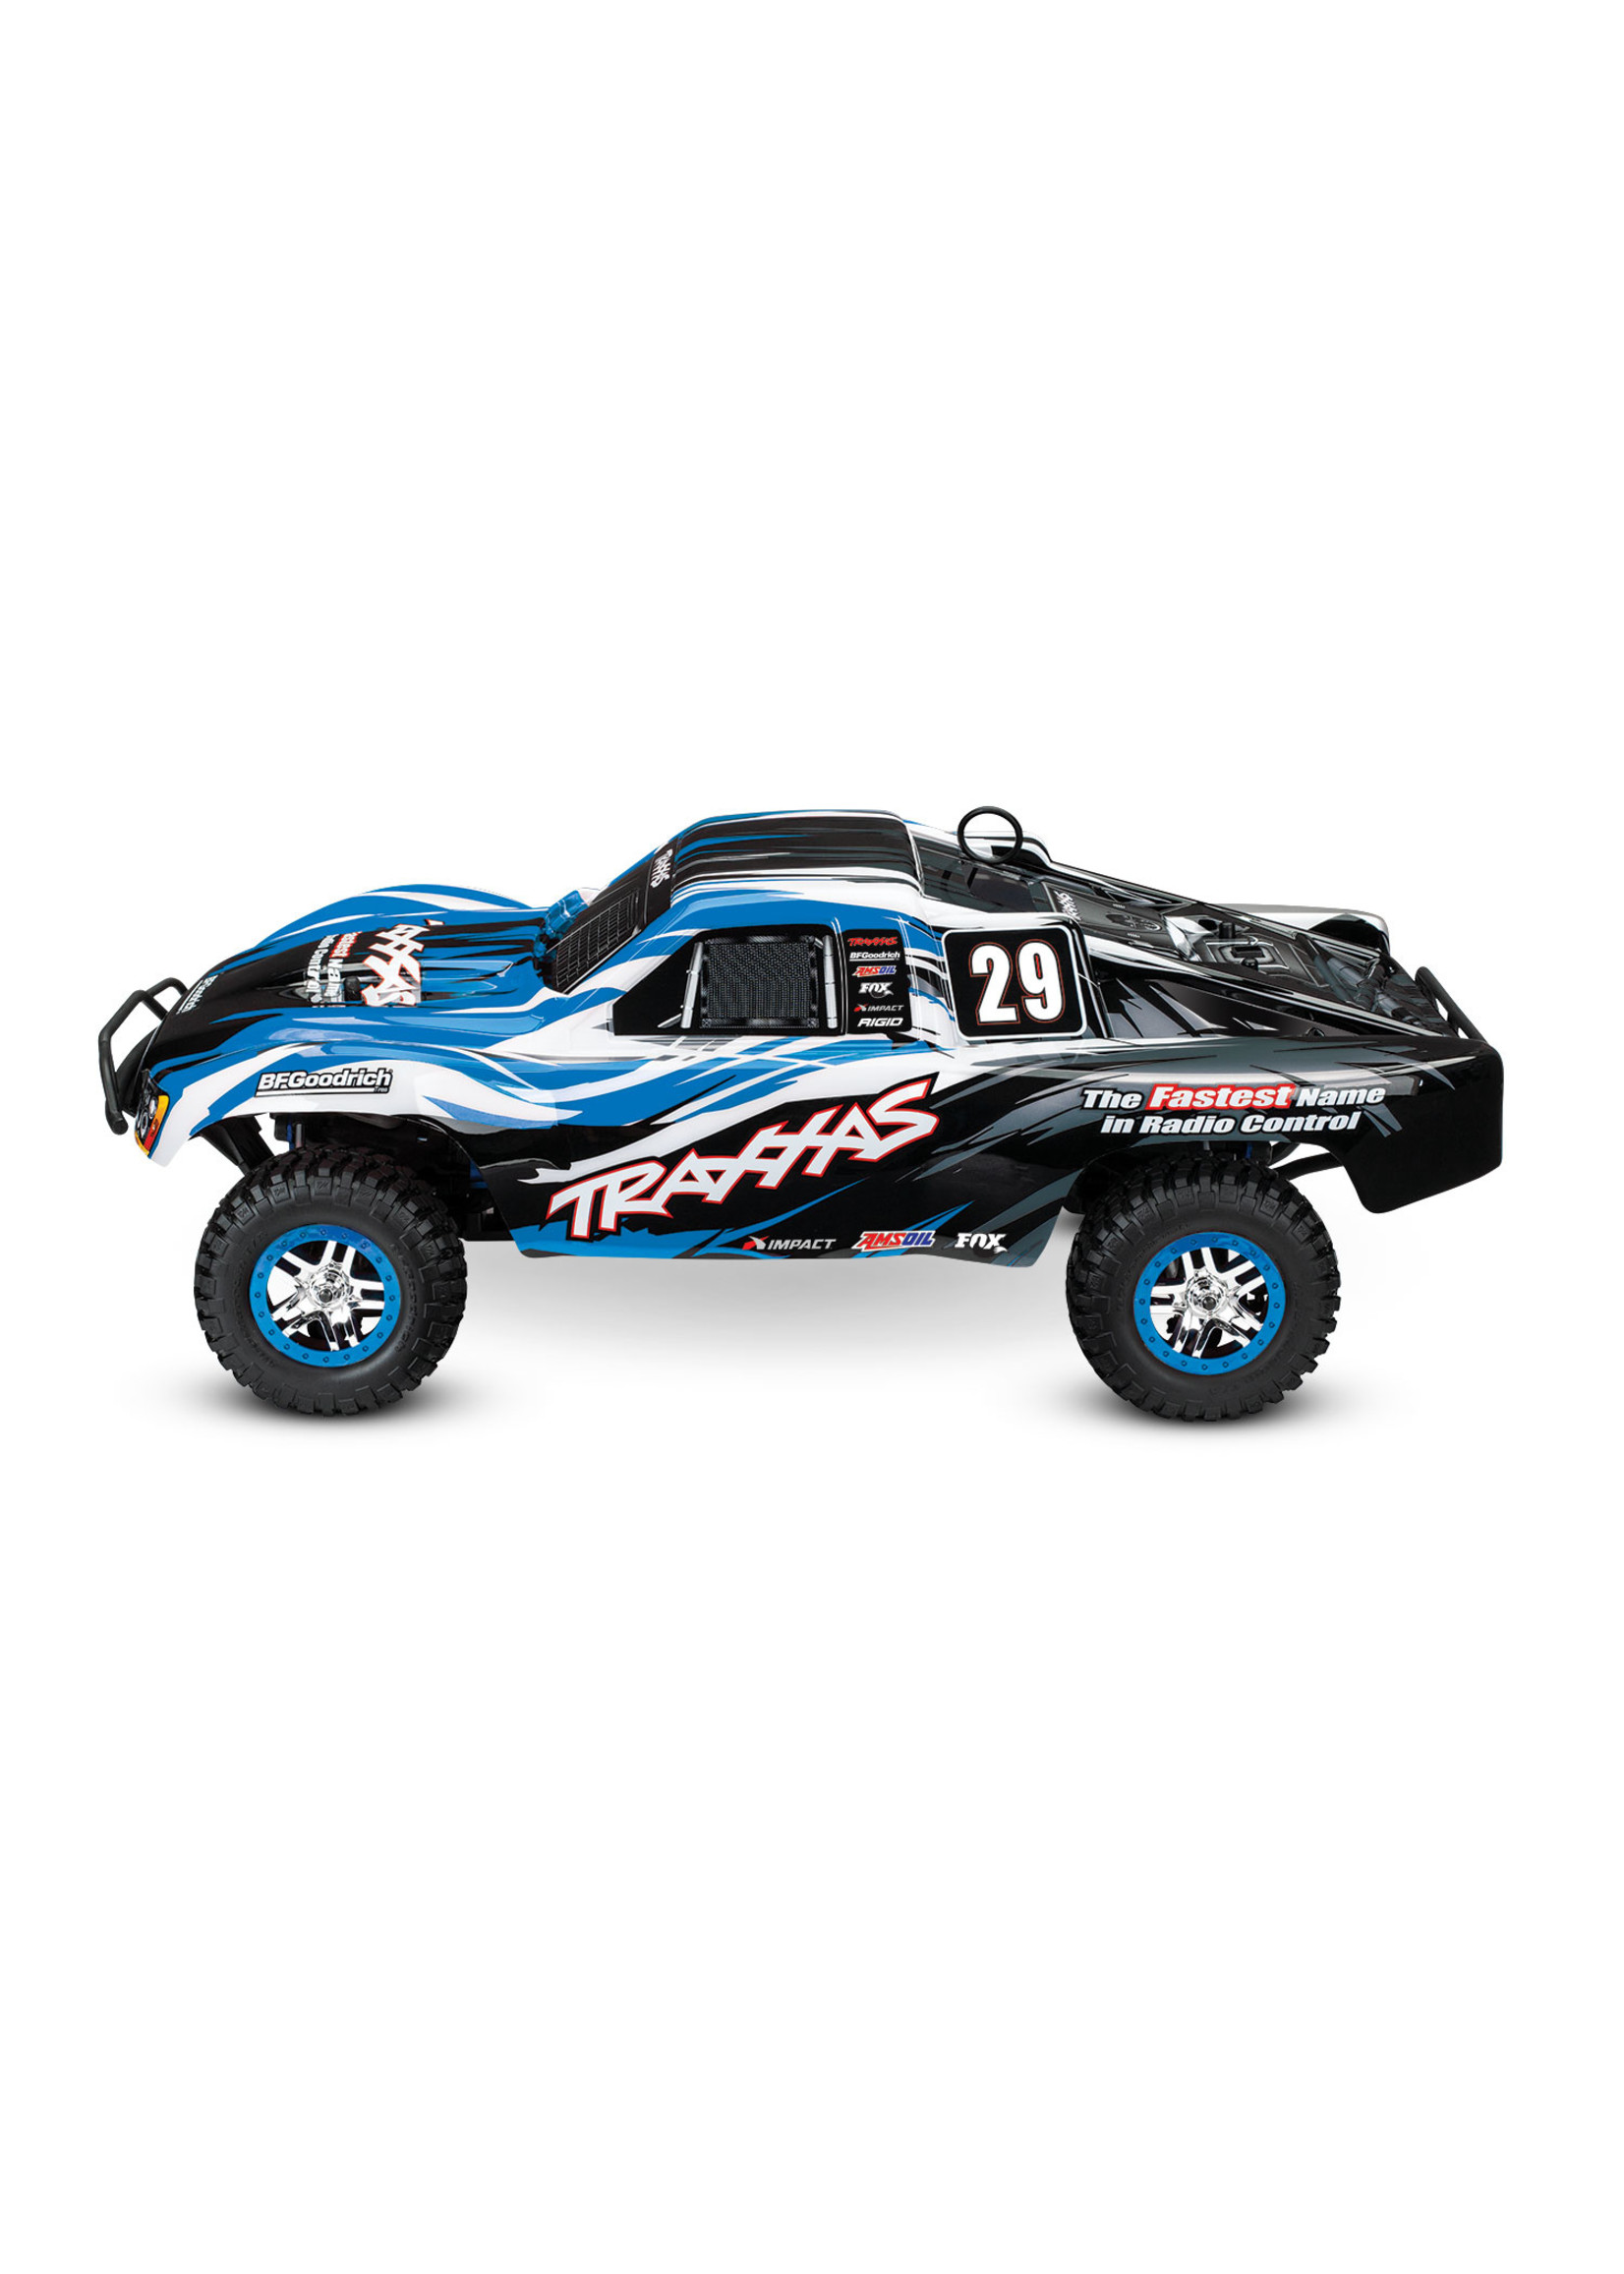 Traxxas 1/10 Slayer Pro 4X4 Nitro Short Course Race Truck - Blue